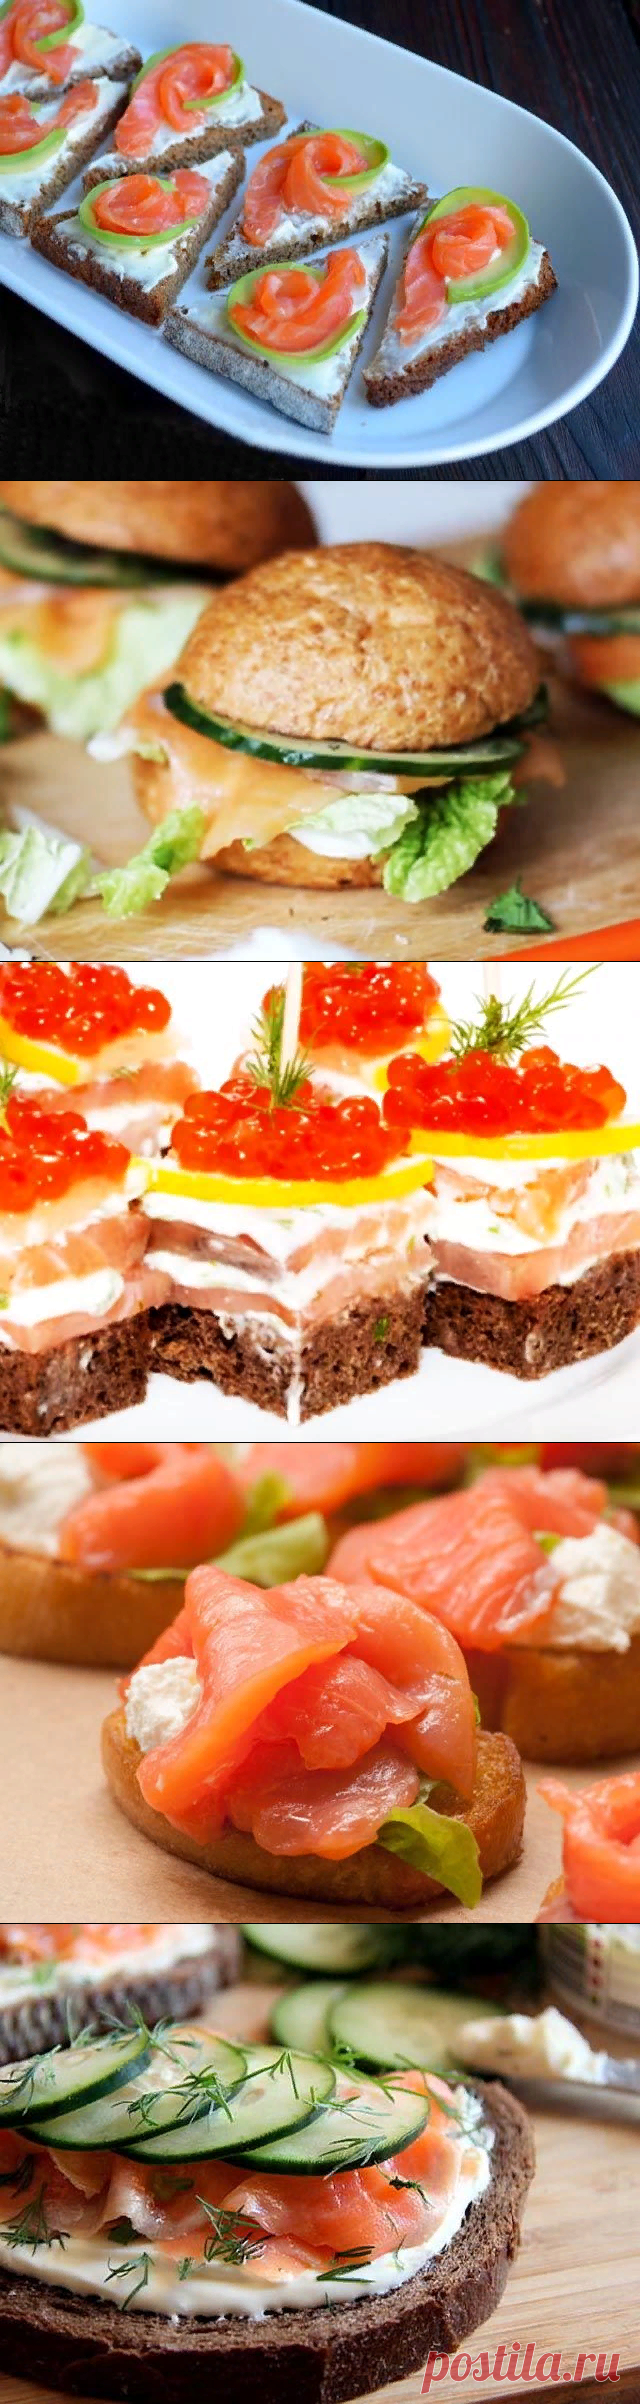 Бутерброды с красной рыбой — 10 рецептов для праздничного стола — Едим дома